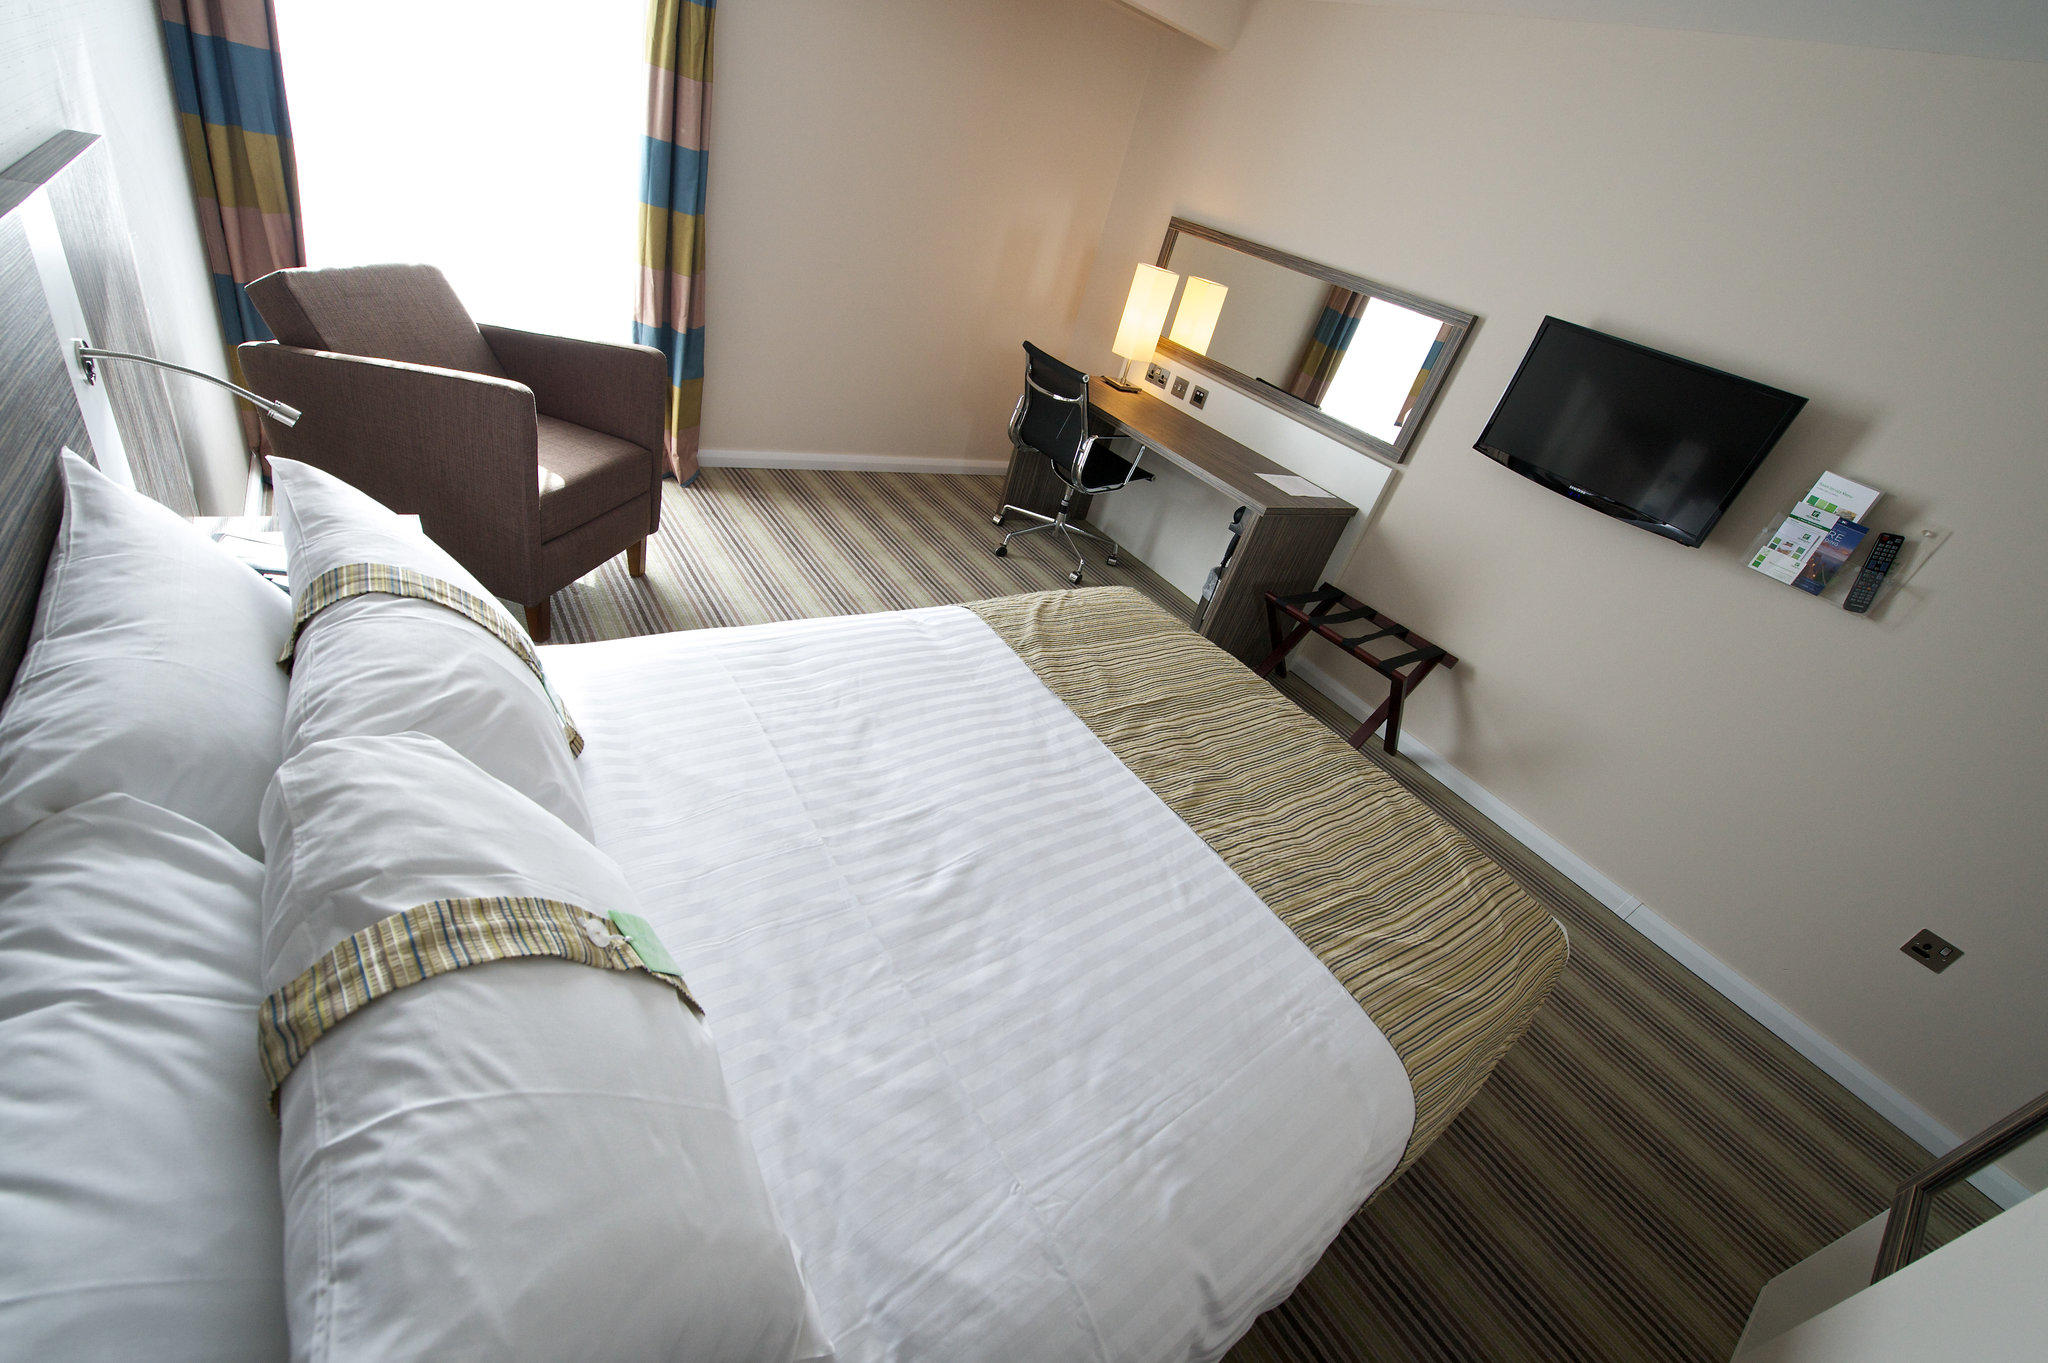 Holiday Inn Southend, an IHG Hotel Southend-on-Sea 01702 543001